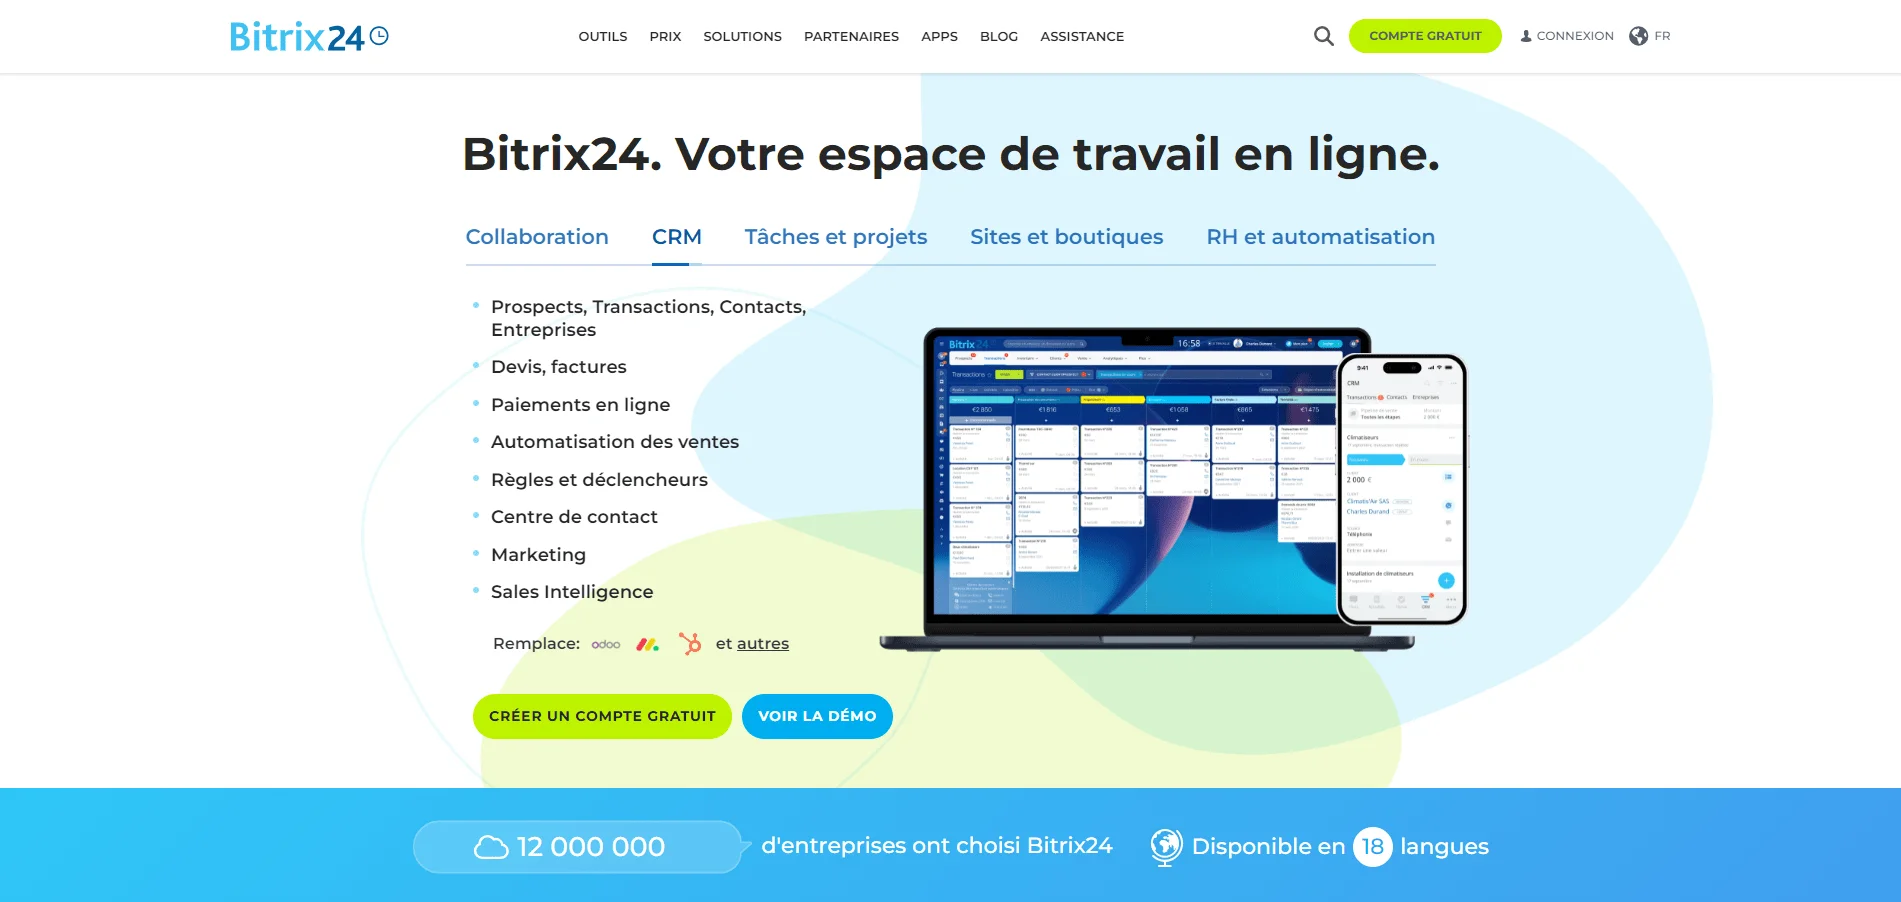 Capture d'écran de la page d'accueil de Bitrix24 présentant ses fonctionnalités de CRM, tâches et projets, sites et boutiques, RH et automatisation, avec une image d'un ordinateur portable et d'un téléphone affichant l'interface utilisateur de Bitrix24.